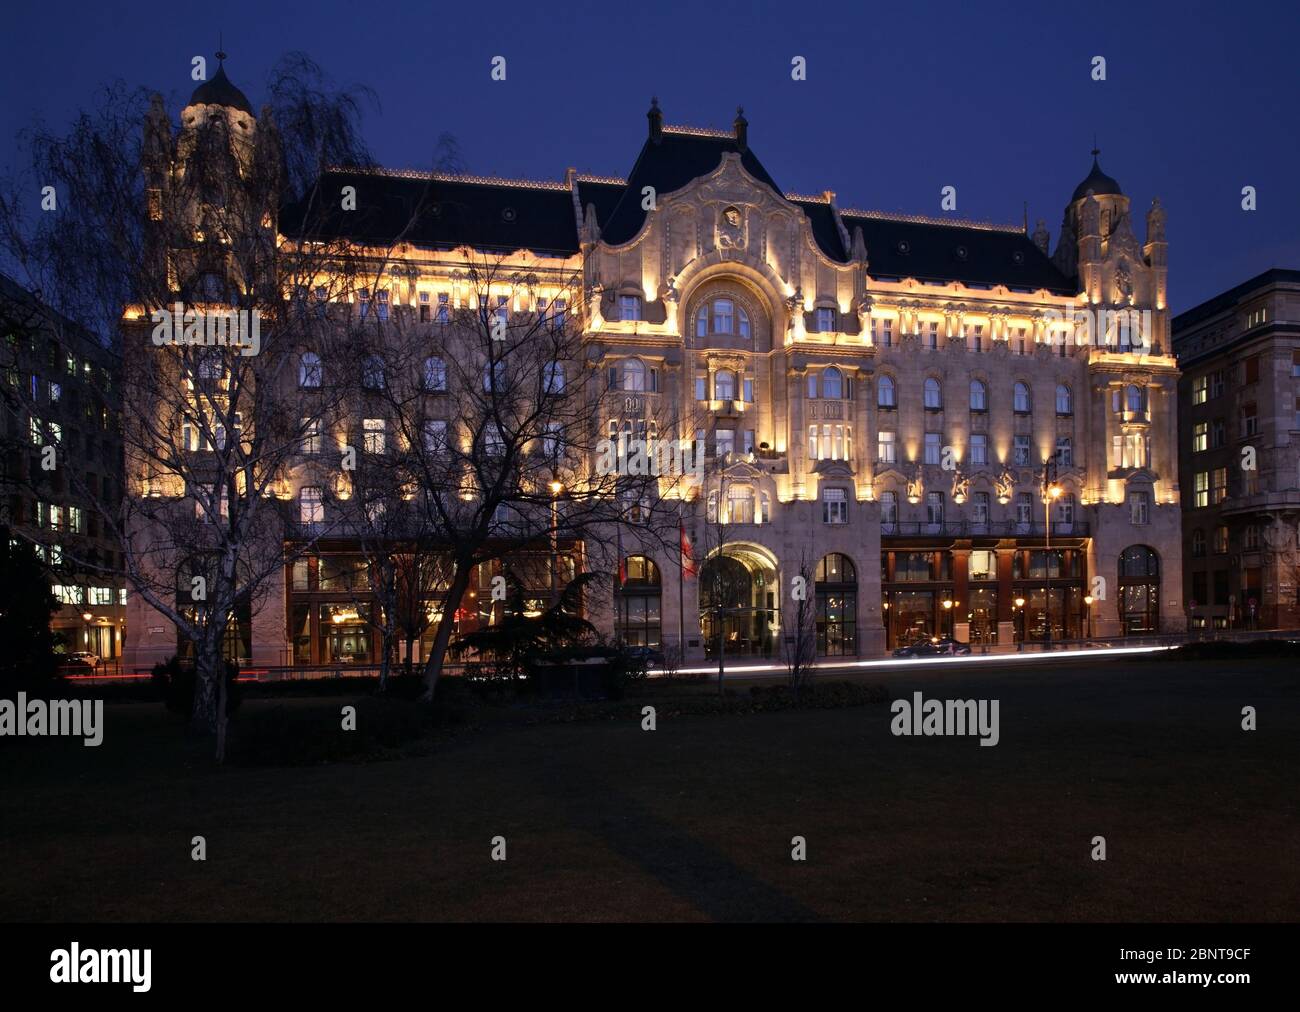 Four Seasons Hotel Budapest Gresham Palace (Gresham-palota) in Budapest. Hungary Stock Photo